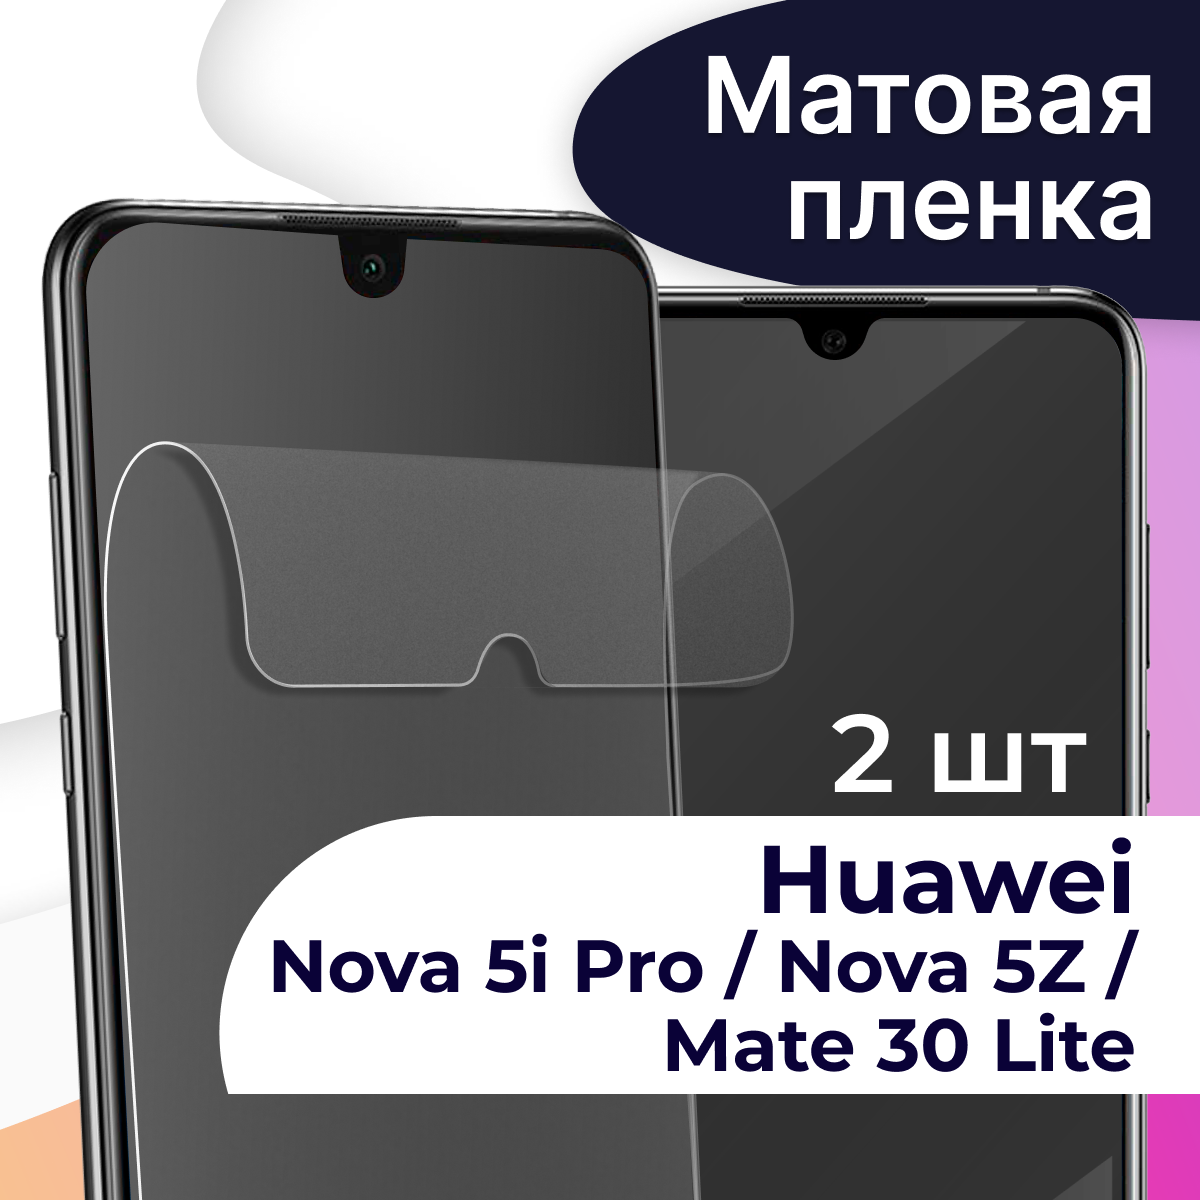 Комплект 2 шт. Матовая пленка на телефон Huawei Nova 5i Pro, Nova 5Z и Mate 30 Lite / Защитная пленка на Хуавей Нова 5 Ай Про, Нова 5З и Мейт 30 Лайт